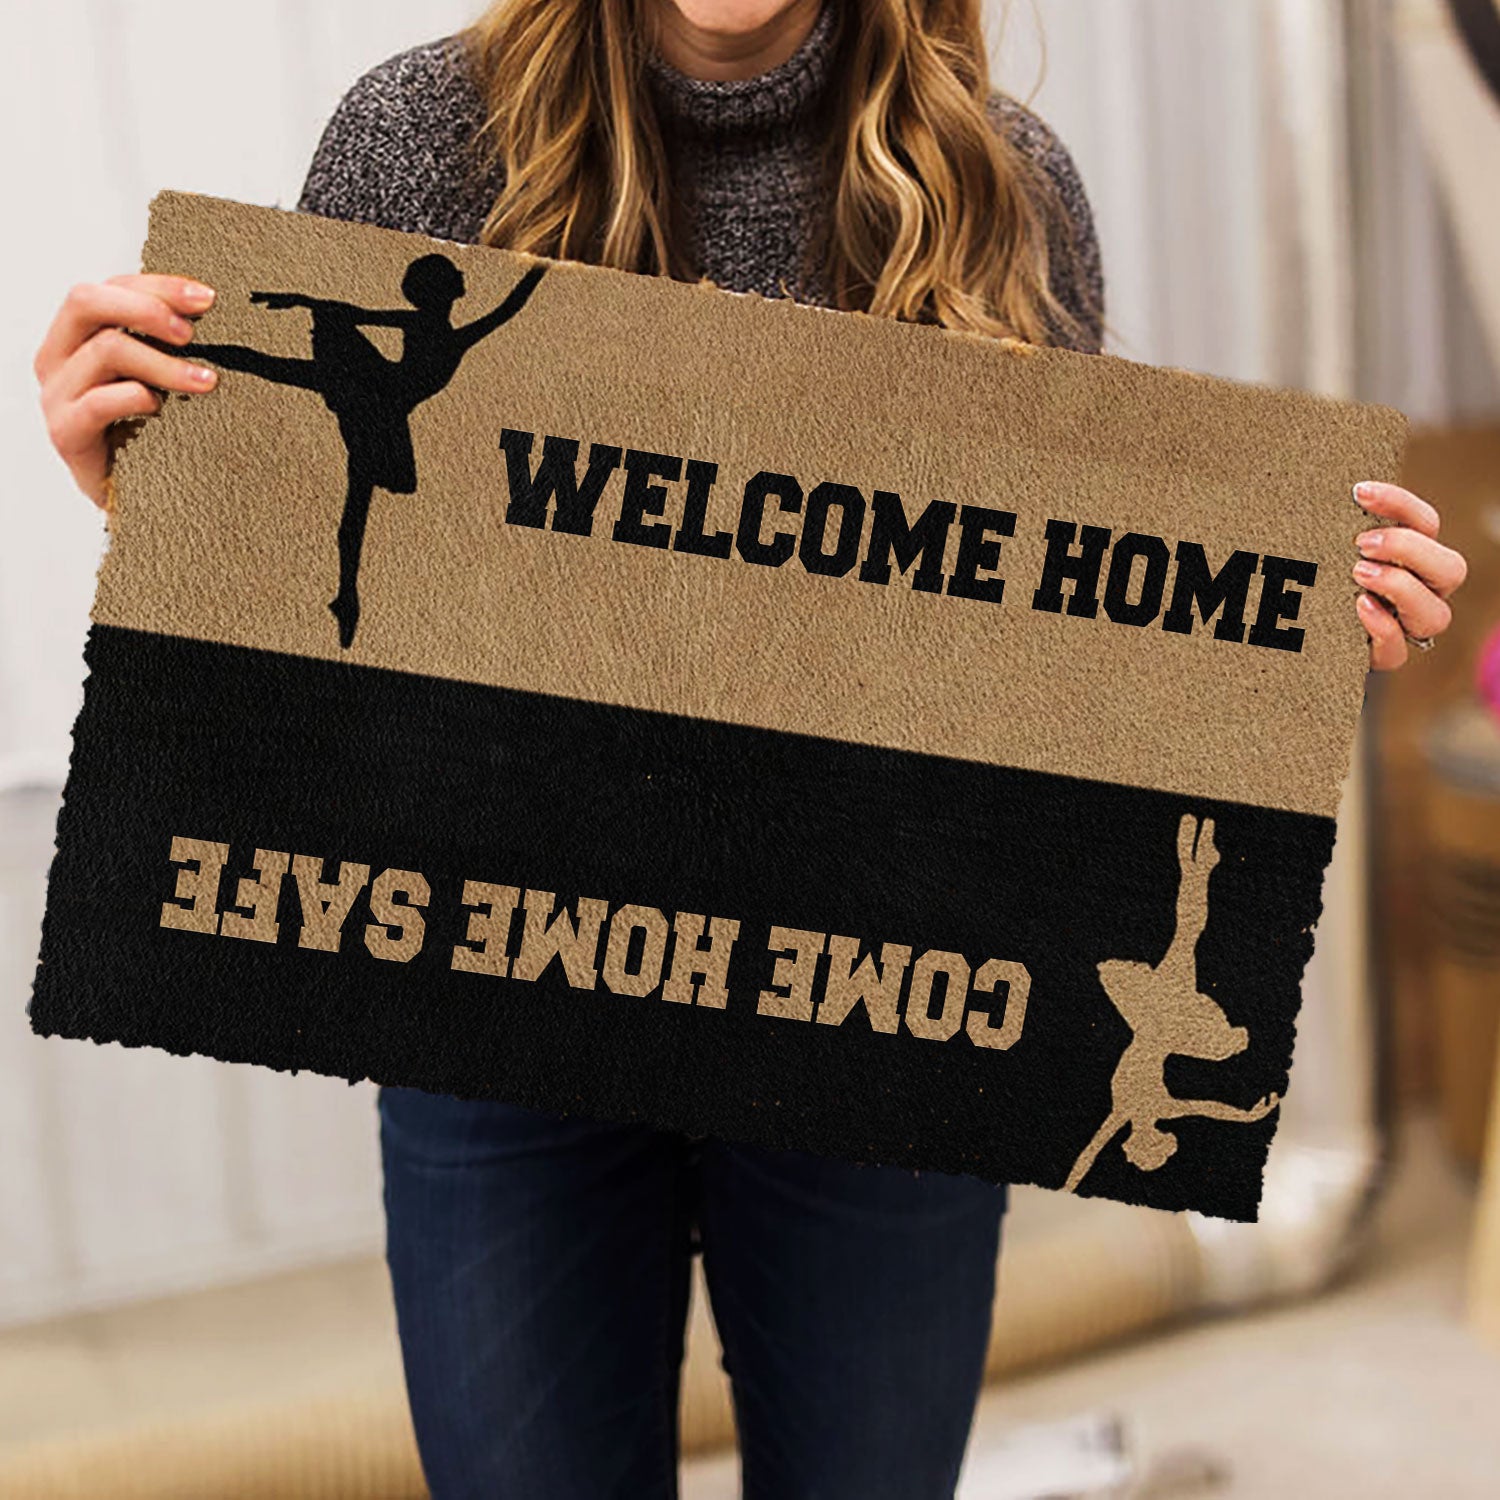 Ohaprints-Doormat-Outdoor-Indoor-Ballet-Welcome-Home-Come-Home-Safe-Rubber-Door-Mat-1083-